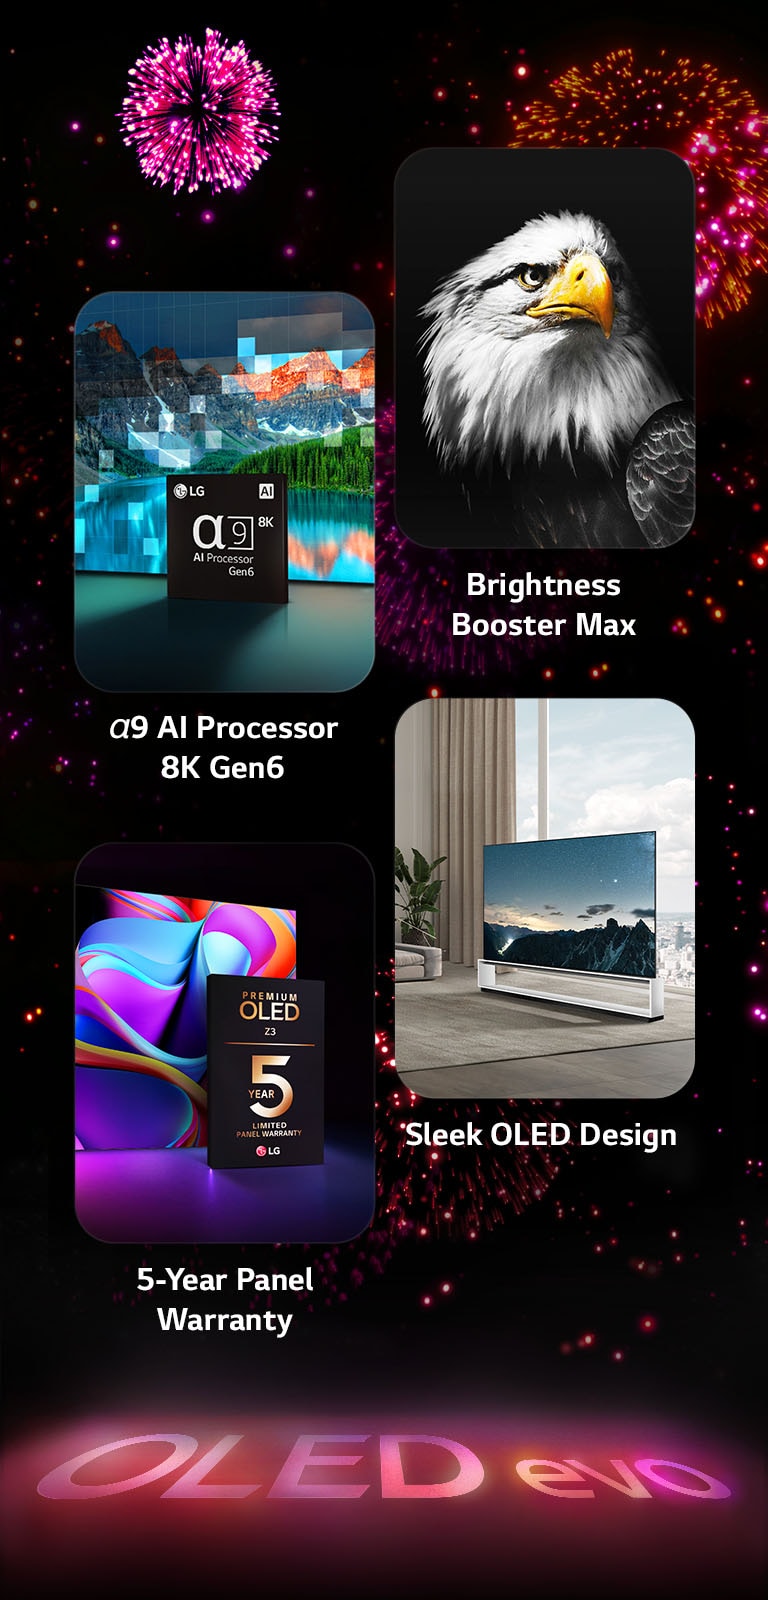 Hình ảnh trình bày các tính năng chính của LG OLED evo Z3 trên nền đen với màn bắn pháo hoa màu hồng và tím. Hình ảnh phản chiếu màu hồng từ màn bắn pháo hoa trên mặt đất cho thấy dòng chữ 